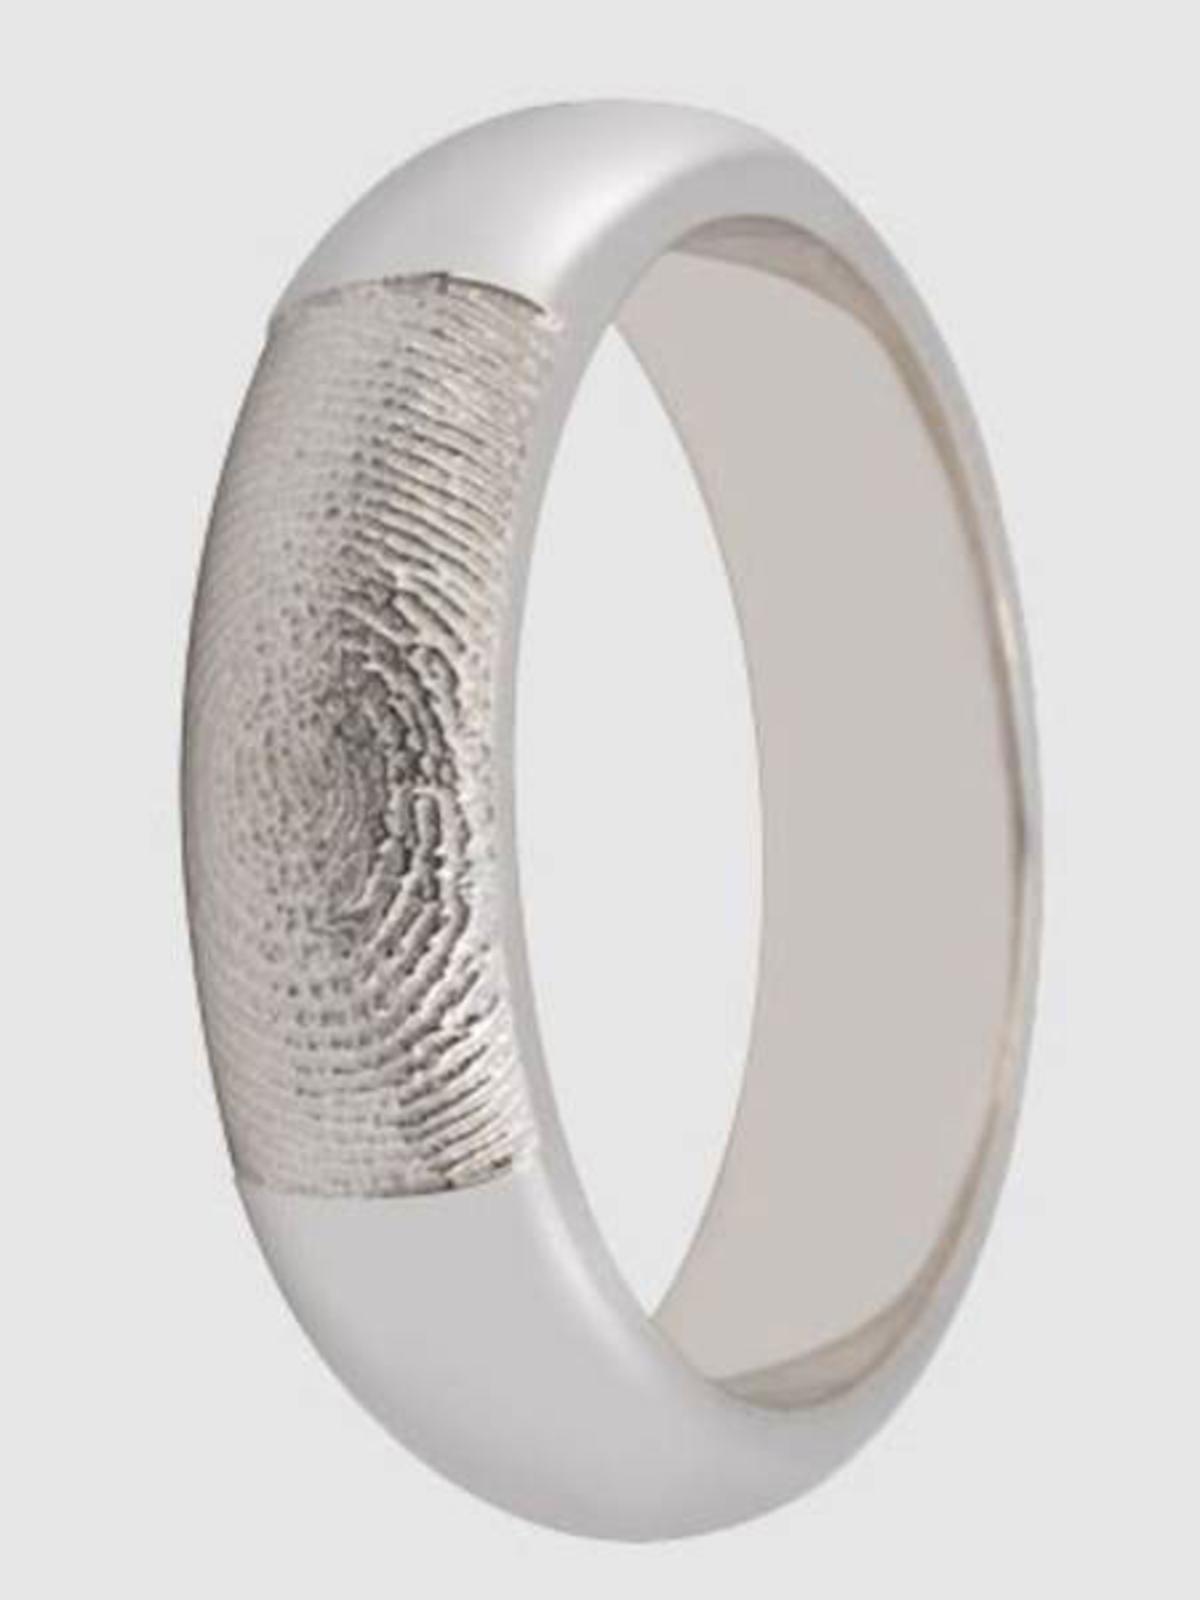 Ring als Erinnerungschmuck, gefertigt mit dem Fingerabdruck des Verstorbenen